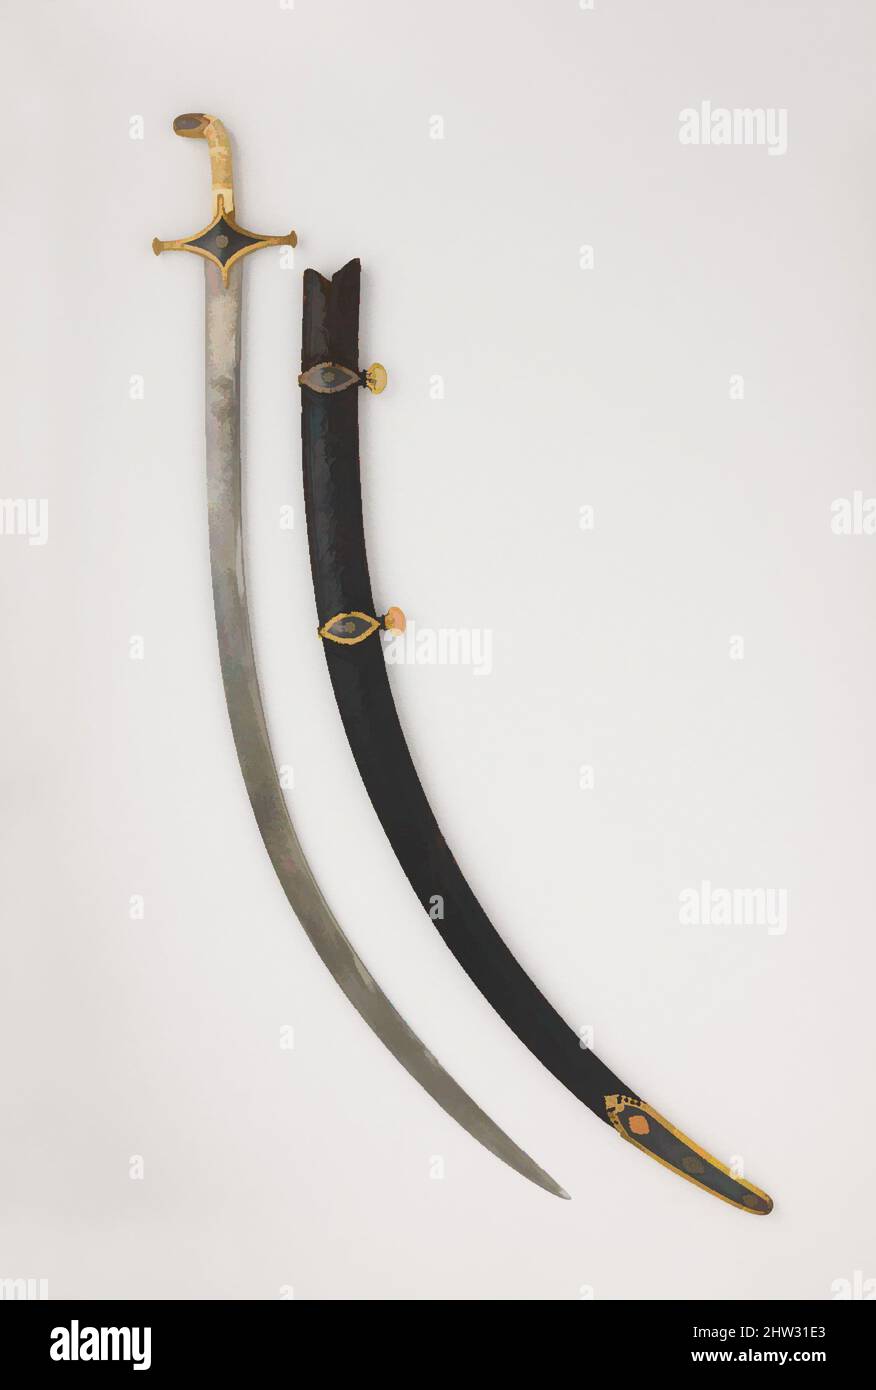 Art inspiré par le sabre avec le scabard, la lame peut-être datée de A.H. 1191/A.D. 1777–78, Perse, acier, bois, cuir, ivoire, or, L. 39 1/4 po. (99,7 cm) ; L. de la lame 32 3/4 in. (83,1 cm) ; poids 1 lb 12 oz (784 g) ; poids de 15 oz (420 g), Swords, c'est un exemple classique d'un, des œuvres classiques modernisées par Artotop avec une touche de modernité. Formes, couleur et valeur, impact visuel accrocheur sur l'art émotions par la liberté d'œuvres d'art d'une manière contemporaine. Un message intemporel qui cherche une nouvelle direction créative. Artistes qui se tournent vers le support numérique et créent le NFT Artotop Banque D'Images